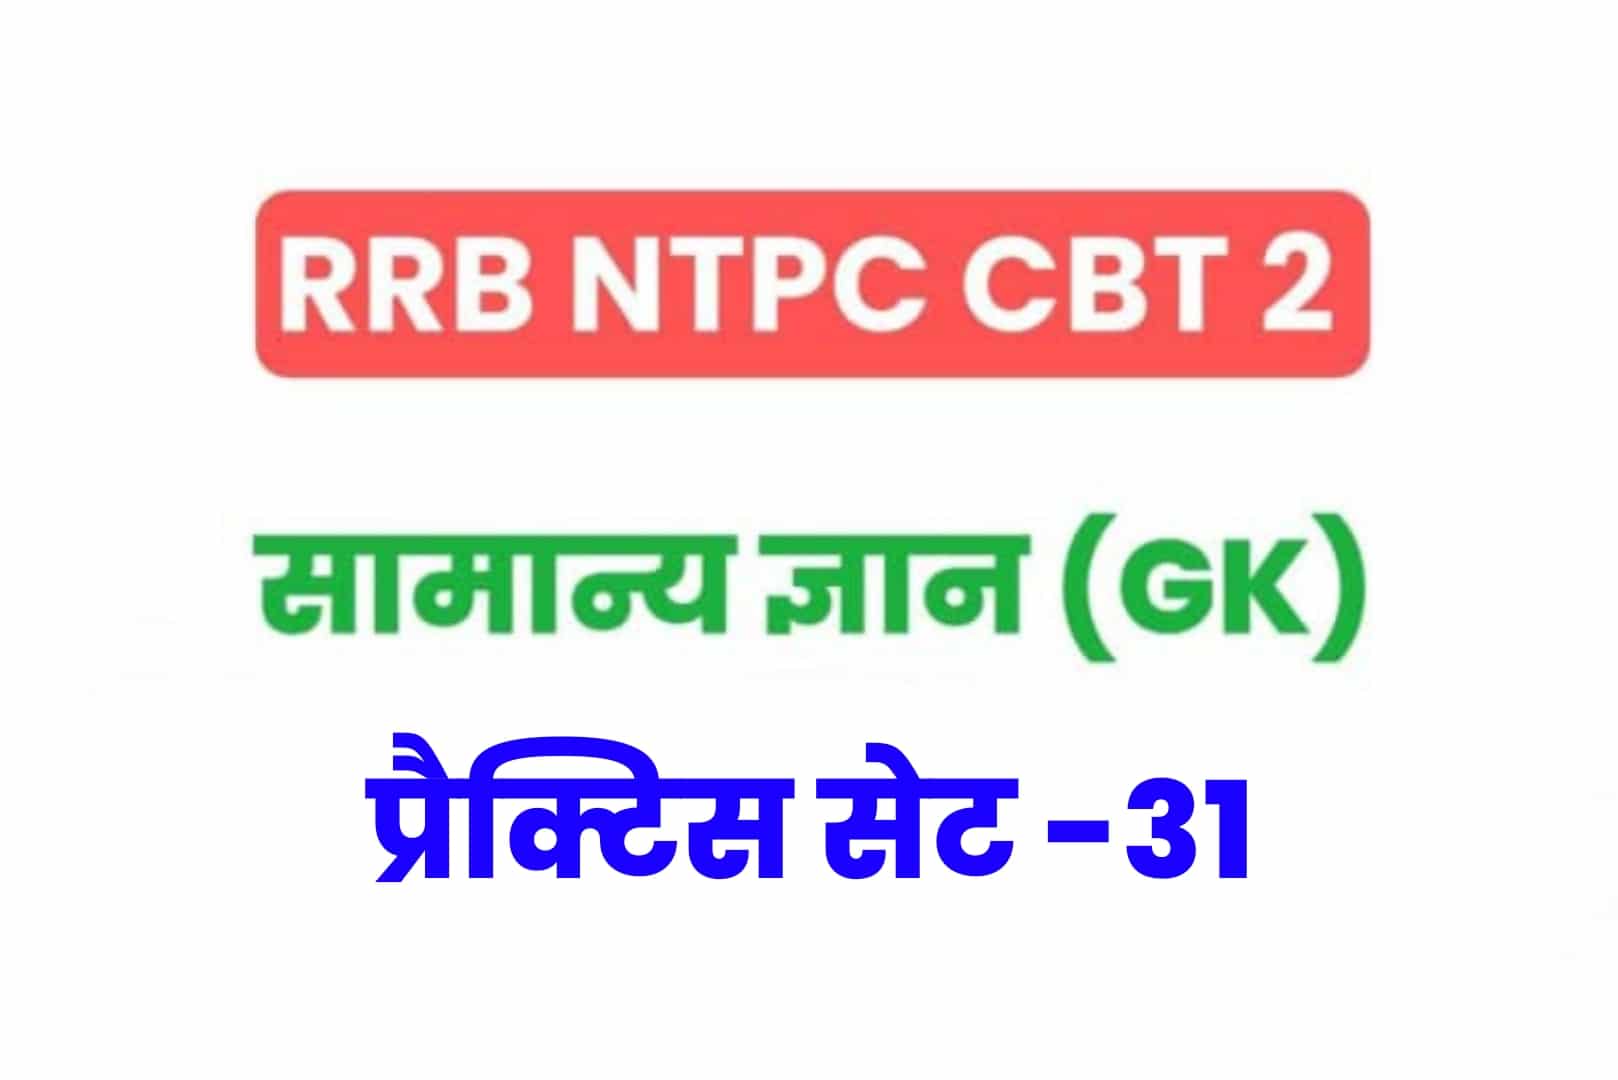 RRB NTPC CBT 2 GK प्रैक्टिस सेट 31: परीक्षा में जानें से पहले सामान्य ज्ञान के महत्वपूर्ण  25 MCQ का करें अध्ययन